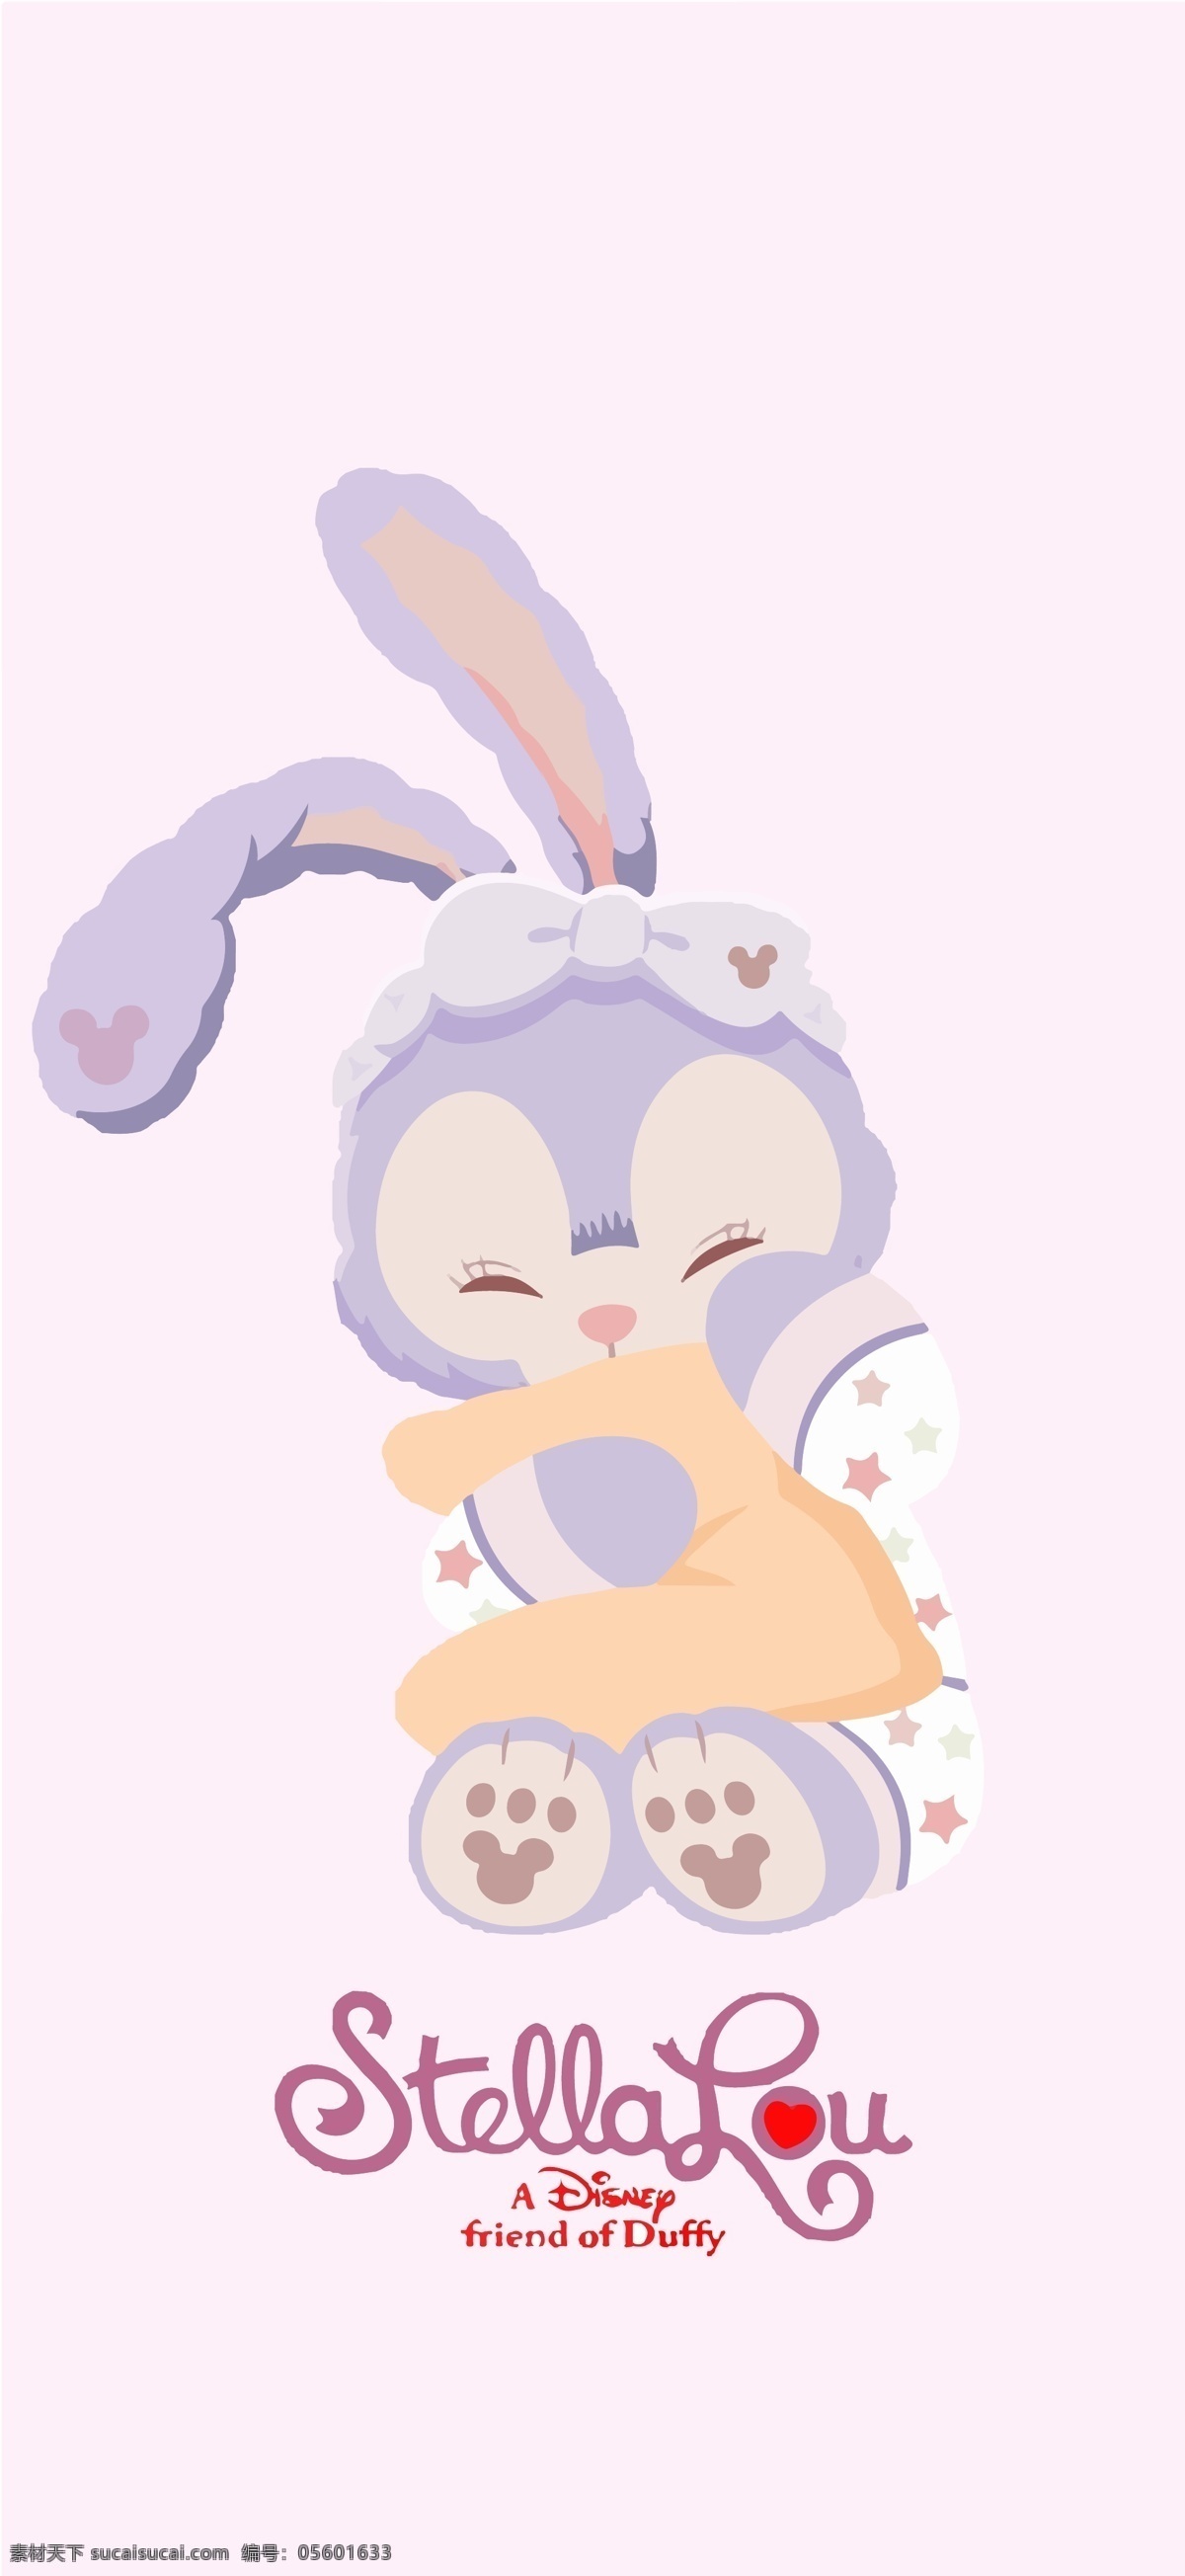 迪士尼 睡衣 星 戴 露 紫色兔子 星戴露 达菲的朋友 兔子 芭蕾兔 动漫动画 动漫人物